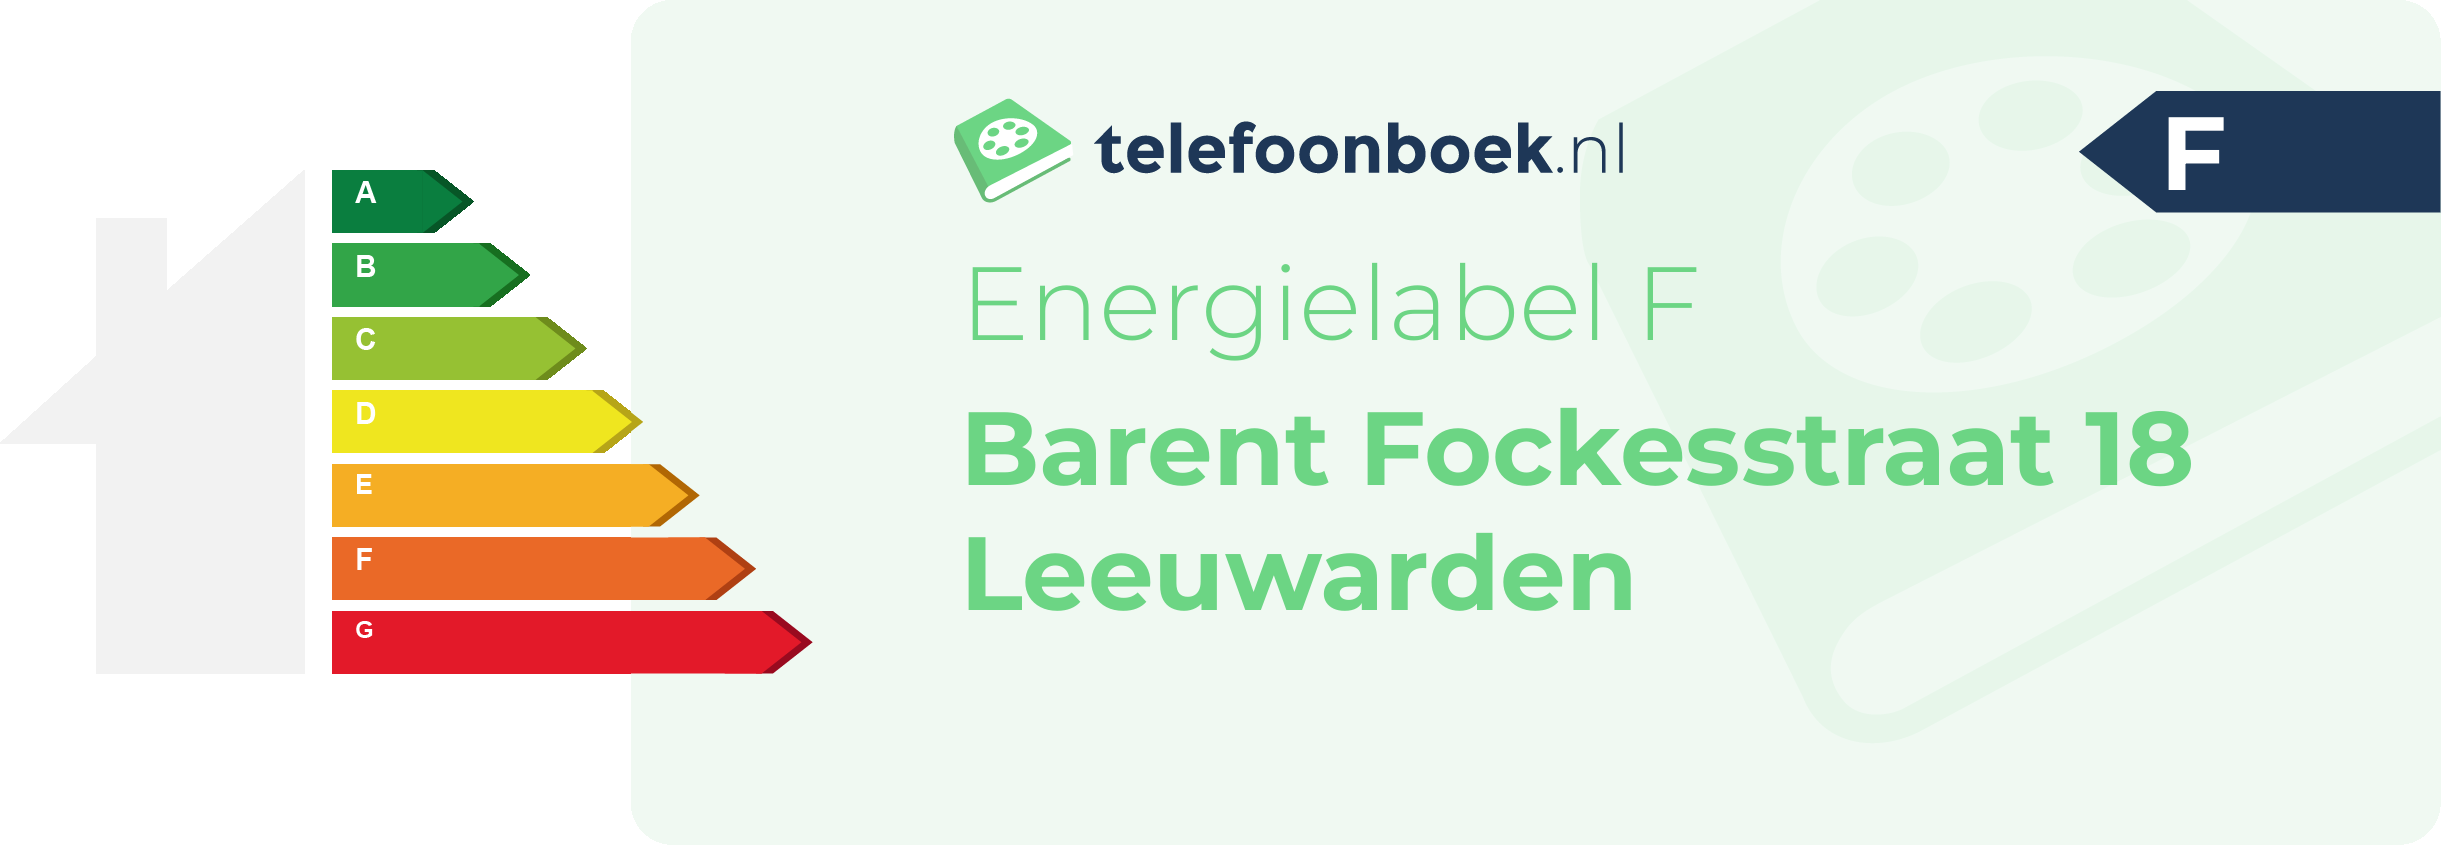 Energielabel Barent Fockesstraat 18 Leeuwarden